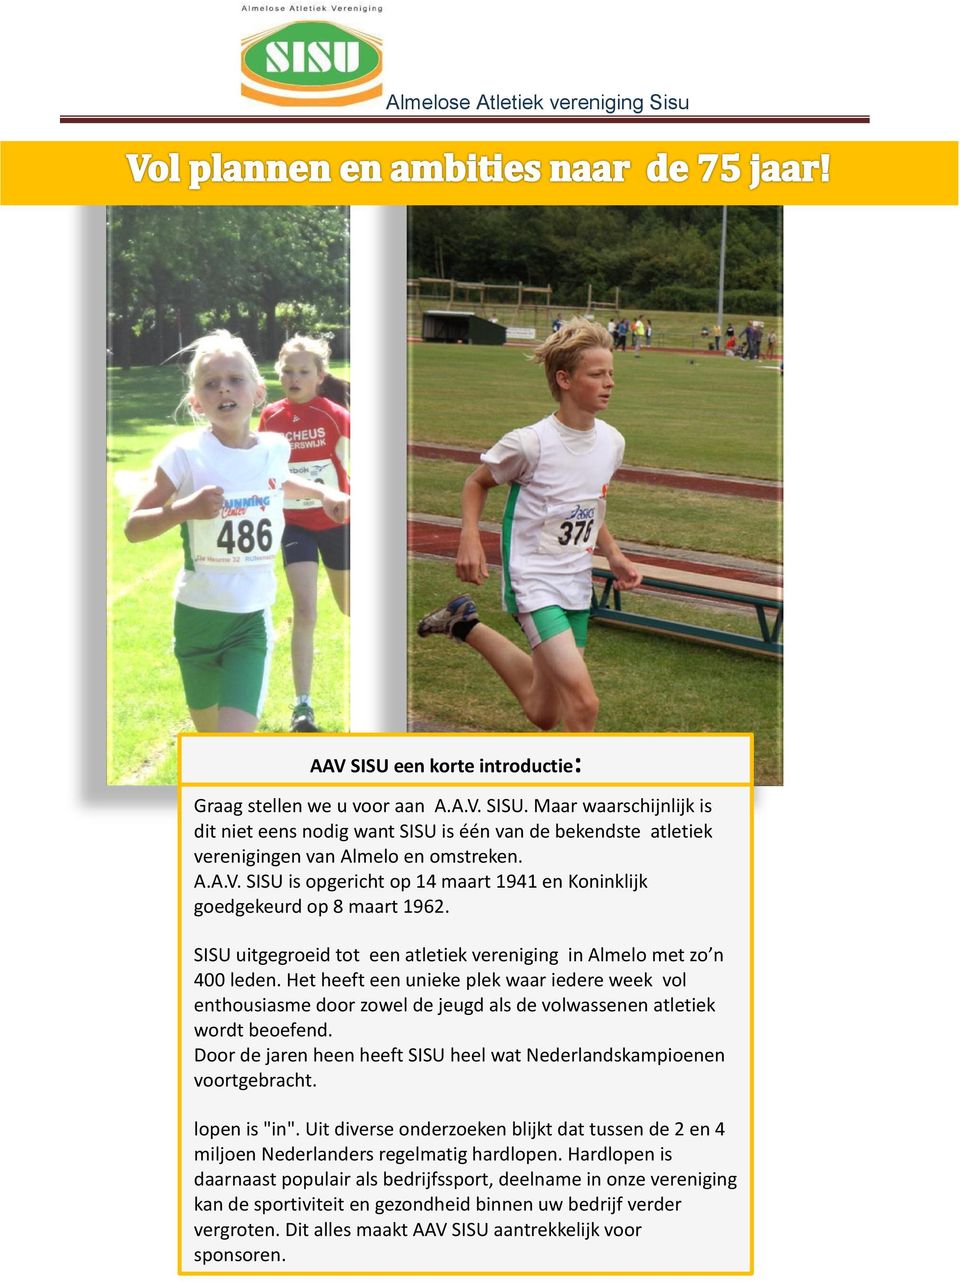 Door de jaren heen heeft SISU heel wat Nederlandskampioenen voortgebracht. lopen is "in". Uit diverse onderzoeken blijkt dat tussen de 2 en 4 miljoen Nederlanders regelmatig hardlopen.